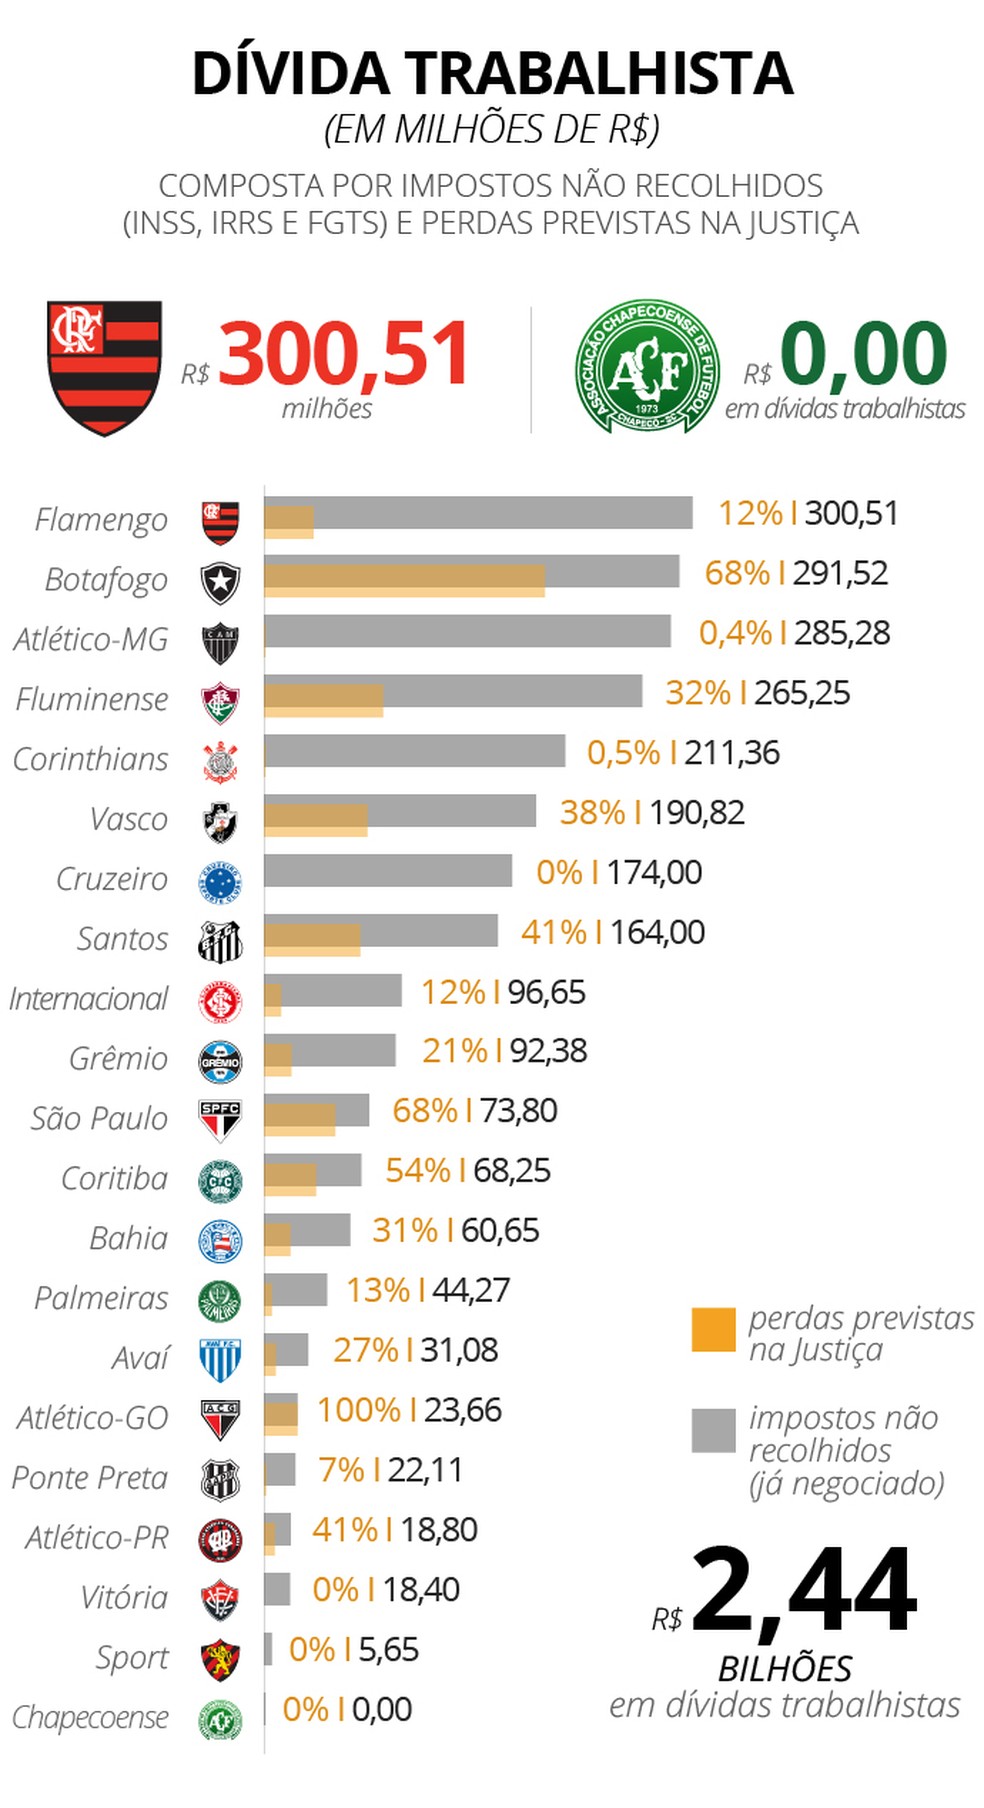 Vasco é o 5° clube mais endividado do país, devendo mais de R 456 milhões